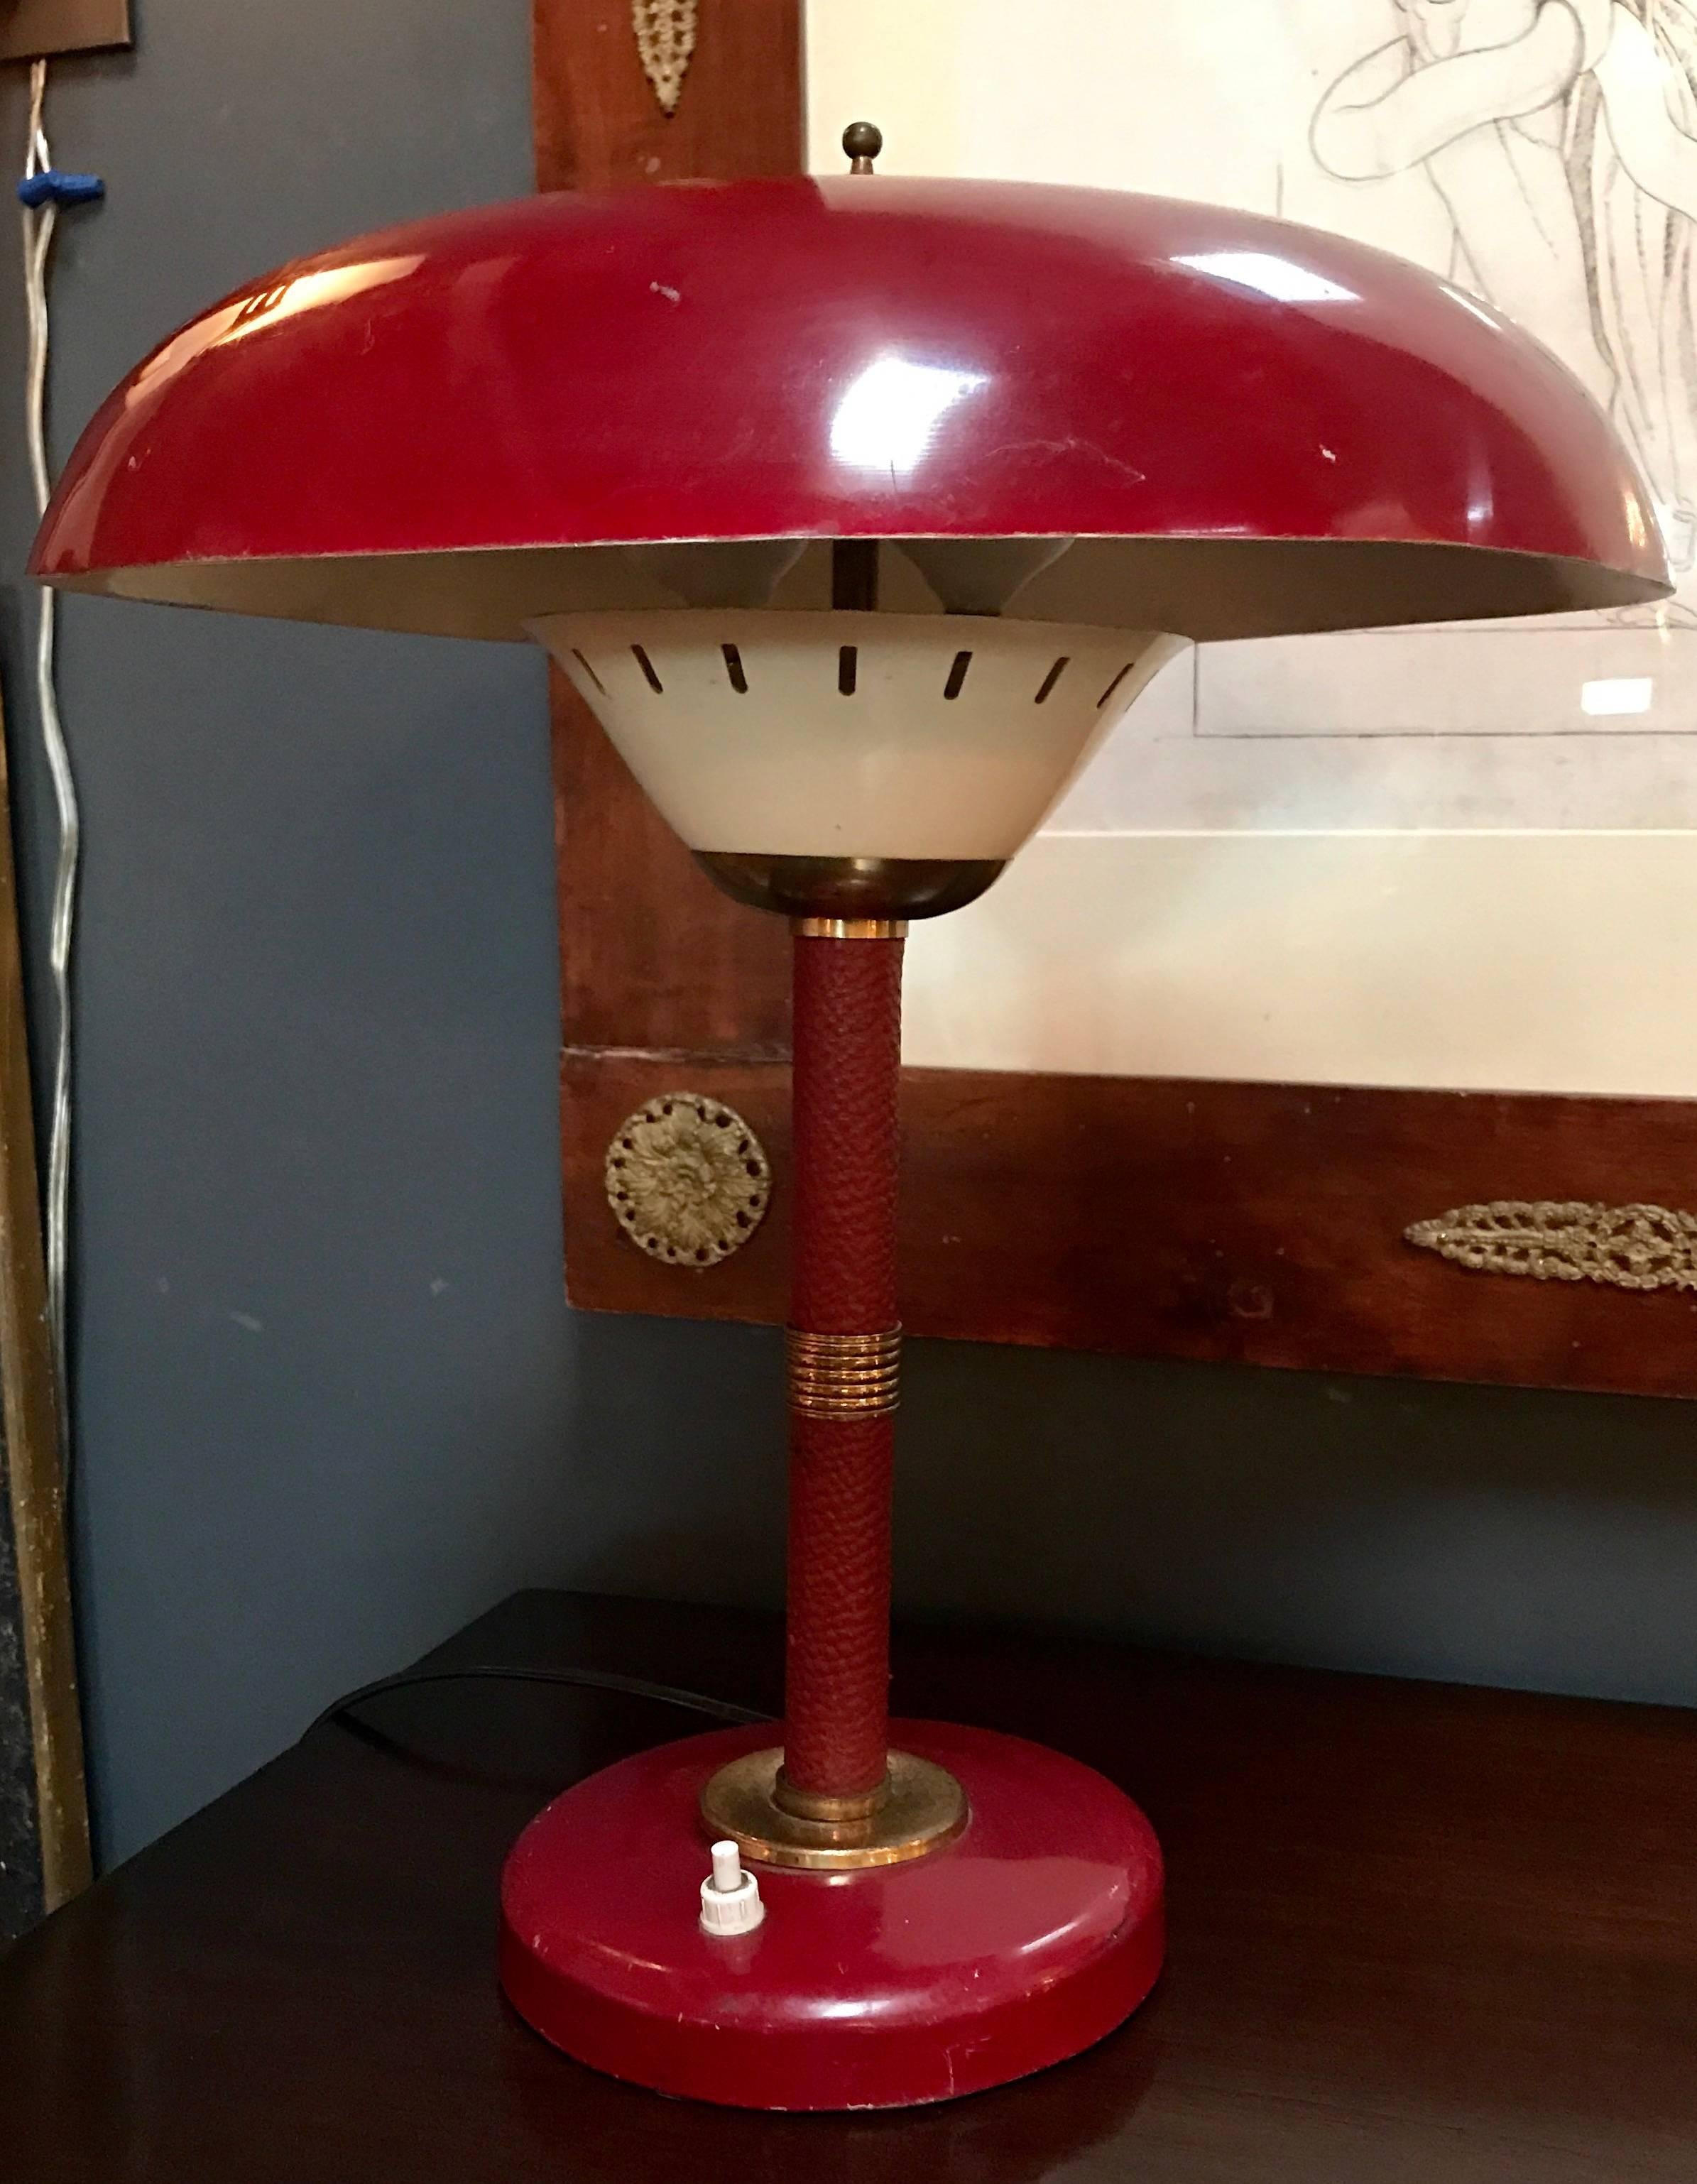 Lampe de table italienne des années 50 en cuir rouge et laiton d'origine.
Attribué à Arredoluce
Sassy !